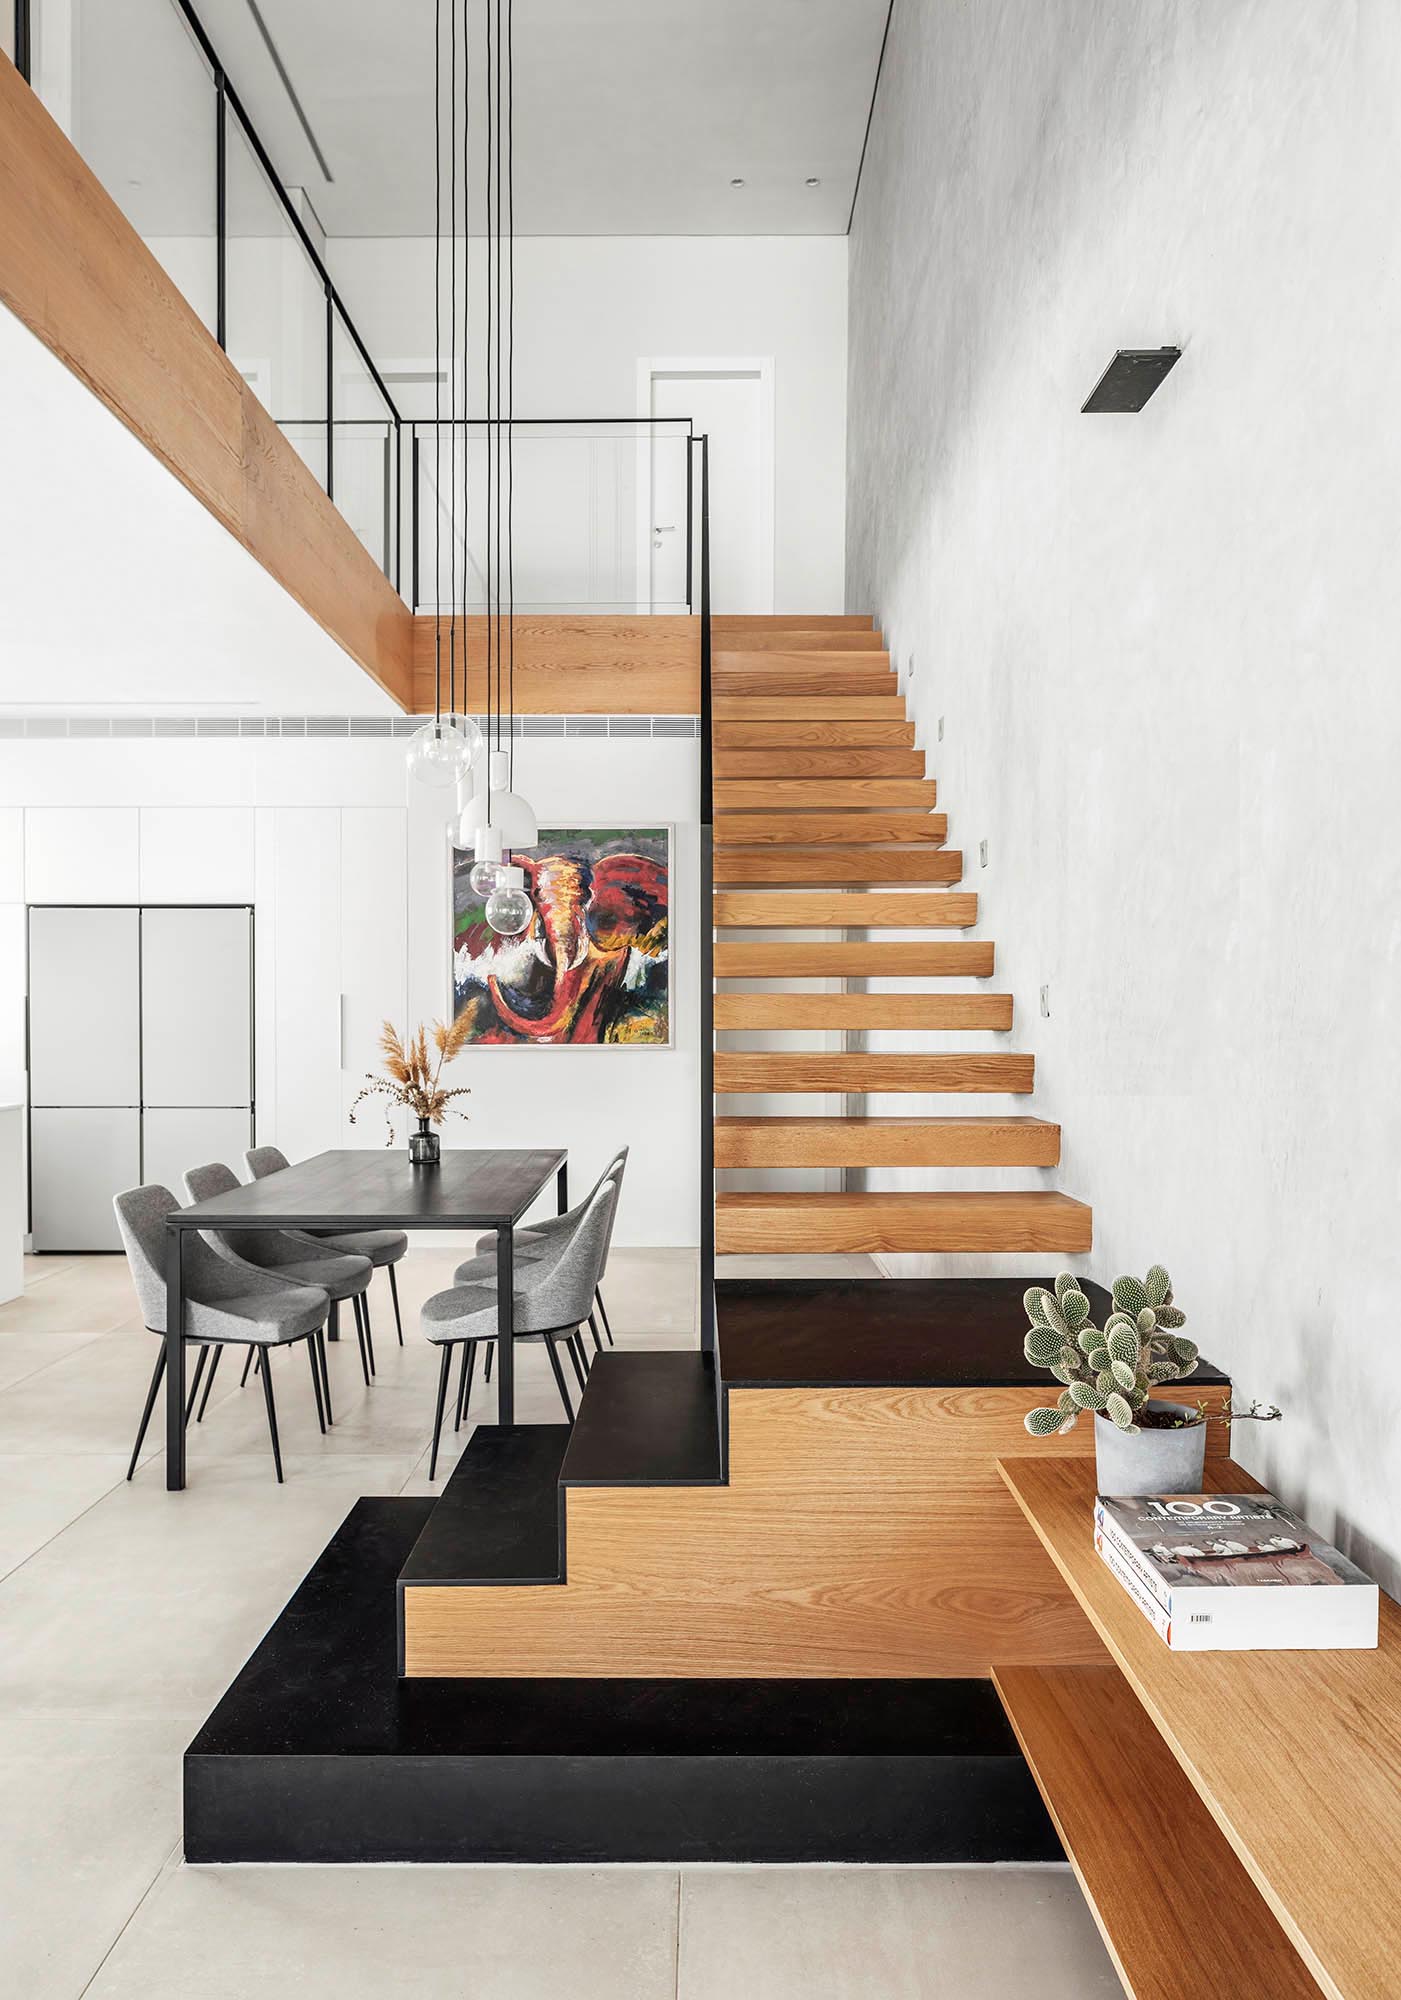 Плавающая дубовая лестница соединяет различные уровни этого современного дома, включает в себя черные железные лестницы внизу и переходы, которые превращаются в буфет для телевизора в гостиной.